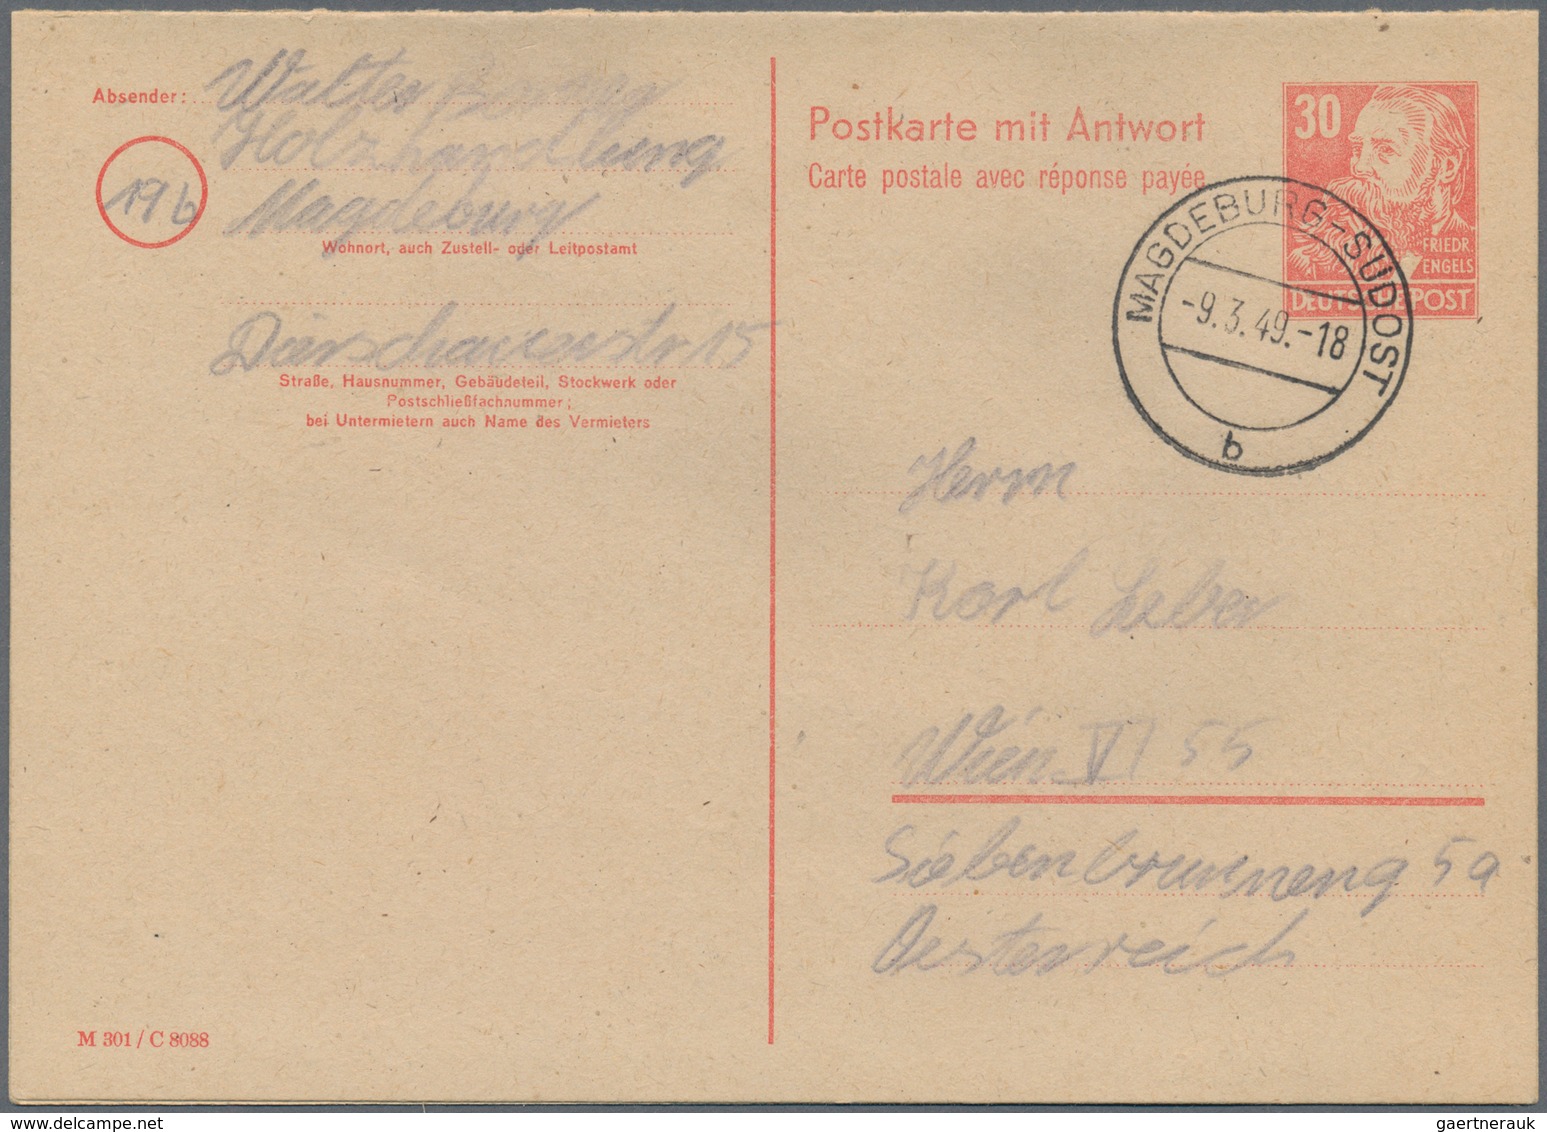 DDR - Ganzsachen: 1949/1990, vielseitiger Posten von ca. 240 bedarfsgebrauchten Ganzsachenkarten mit